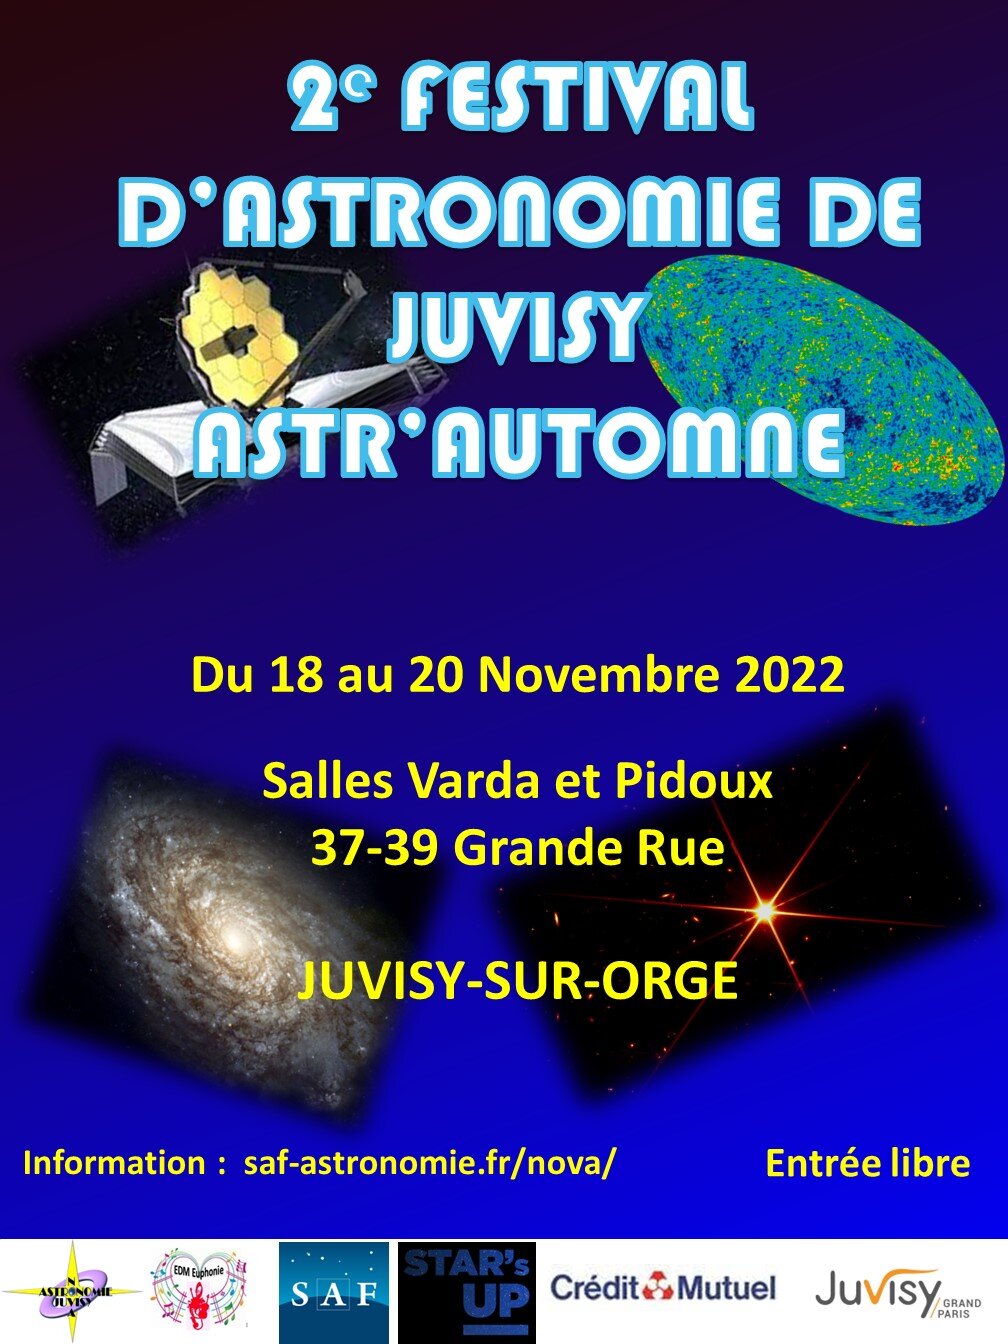 Astr'Automne: 2eme Festival d'Astronomie de Juvisy